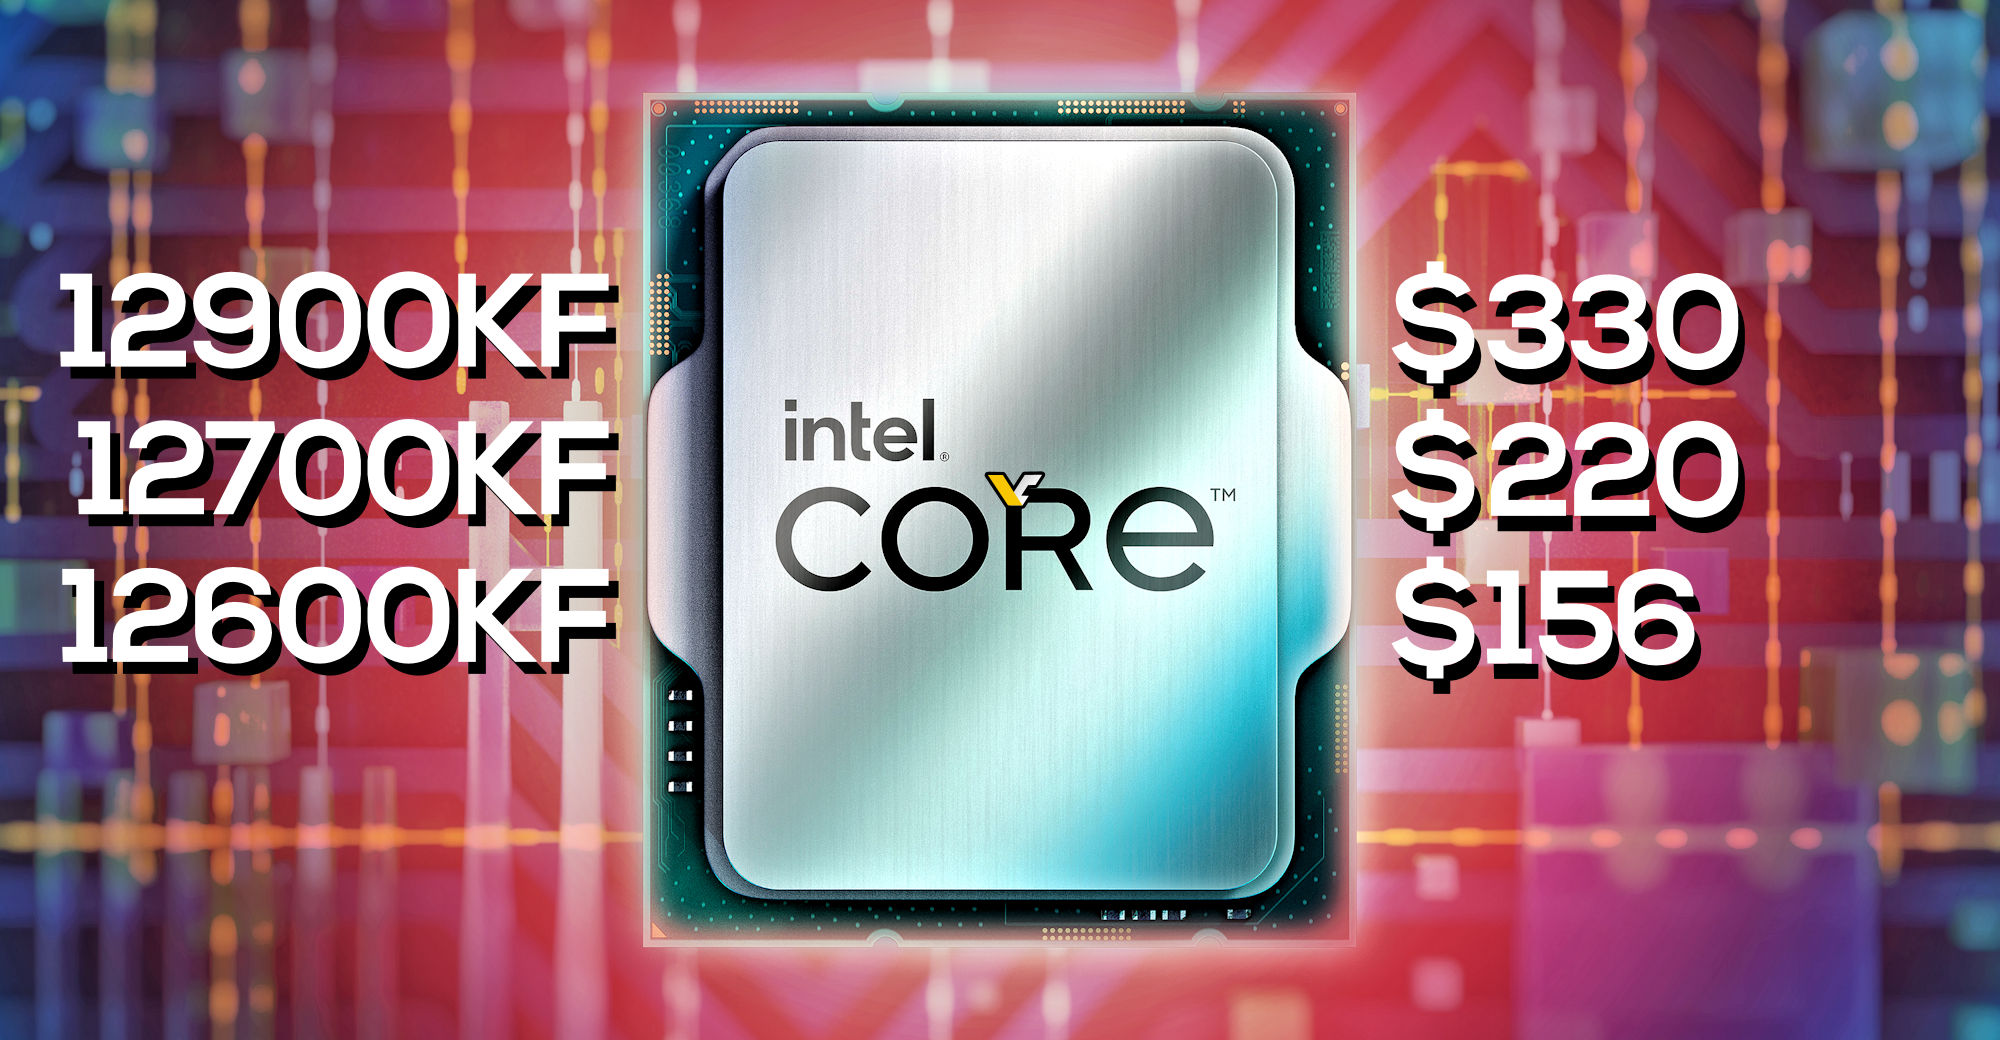 CPU Intel Alder Lake baru saja mendapat potongan harga: Core i9-12900KF seharga $330, i7-12700KF seharga $220 dan i5-12600KF turun menjadi $156